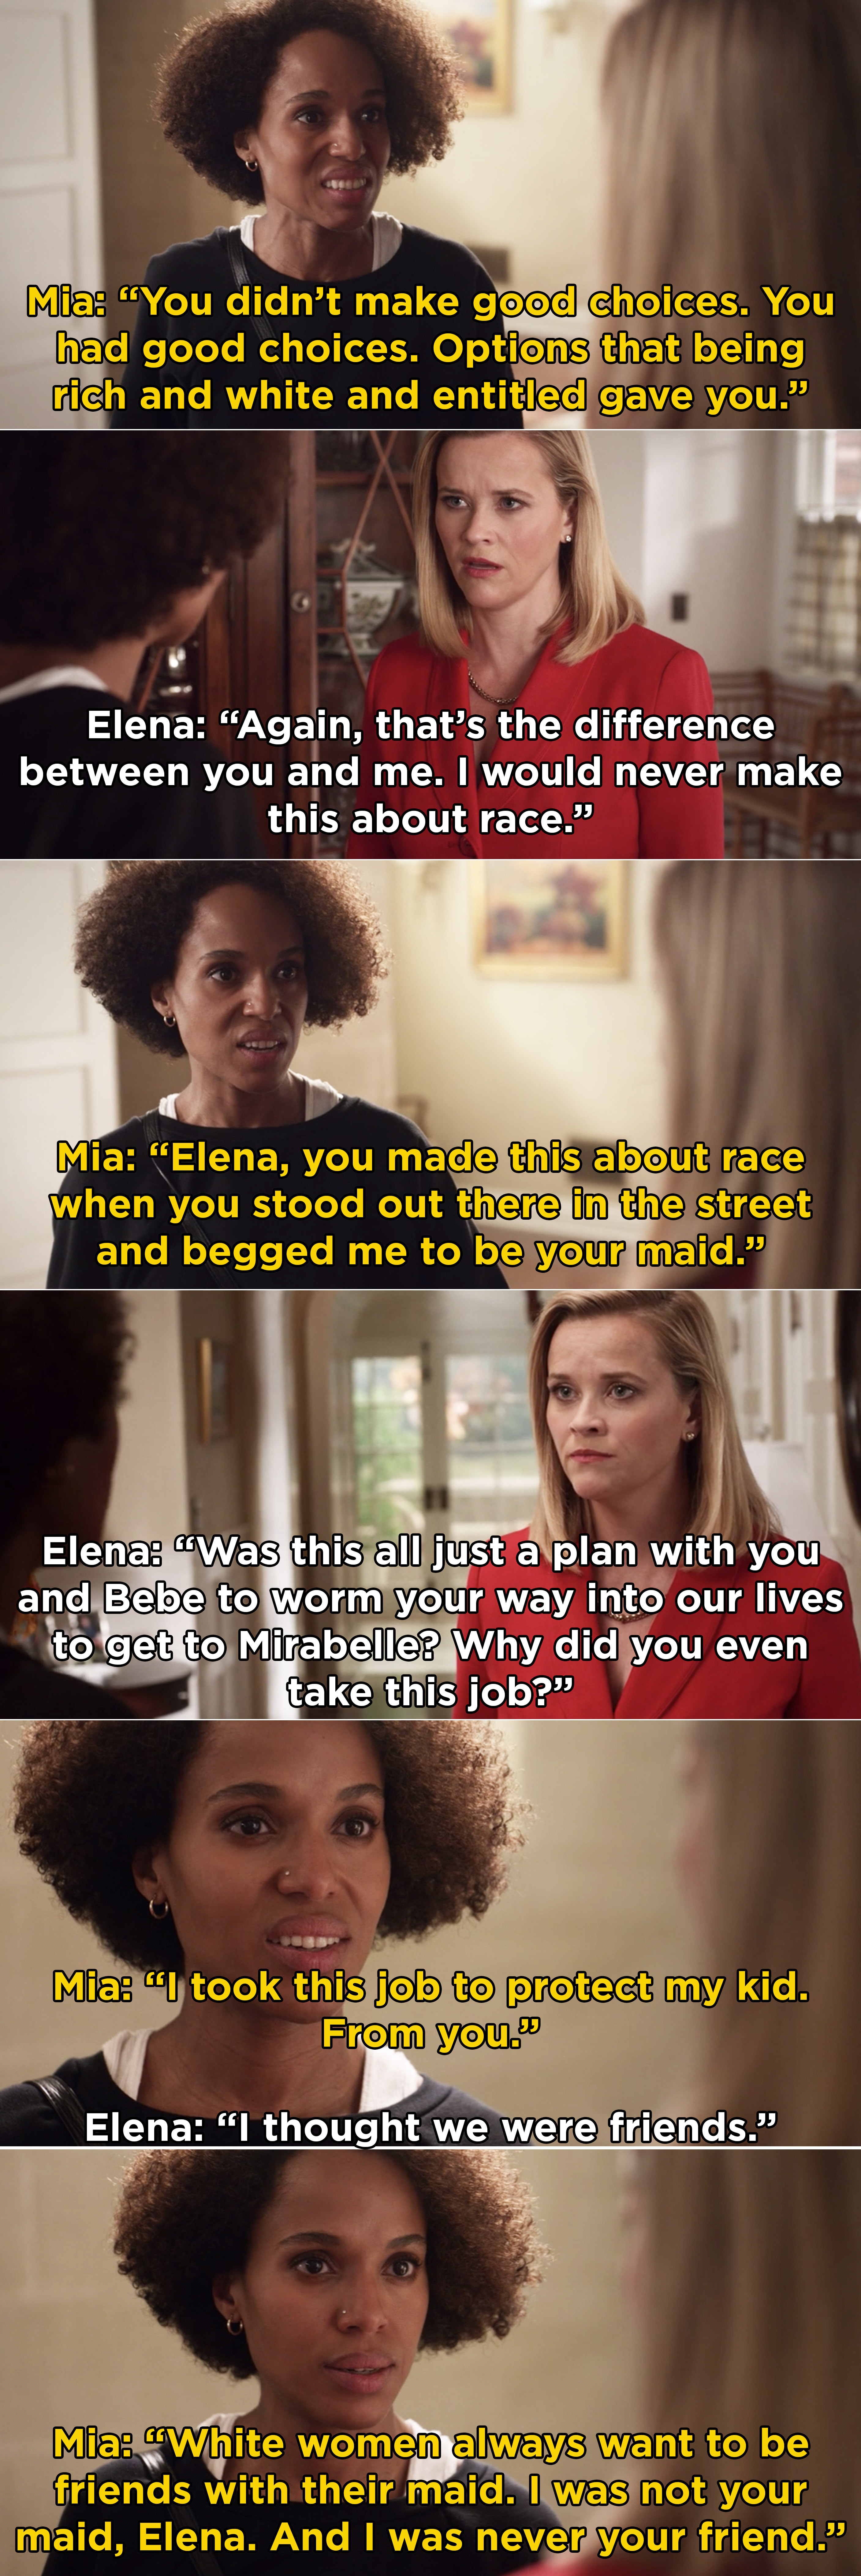 米娅告诉埃琳娜,她做了这个关于种族当埃琳娜问她“是她maid"